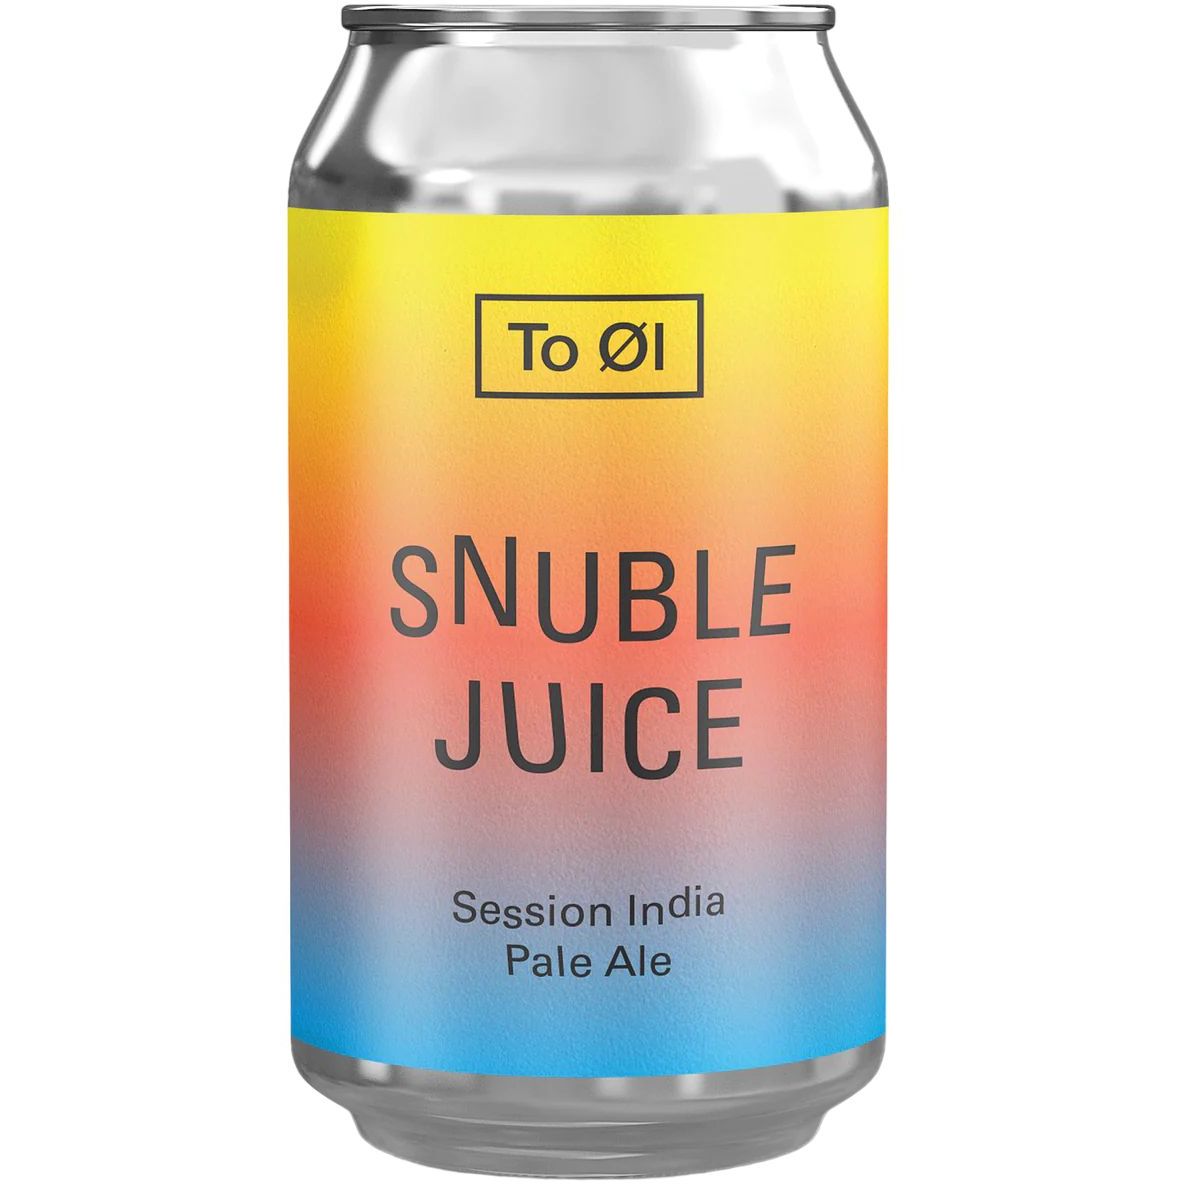 Пиво To ØI Snuble juice светлое 4.5% 0.33 л ж/б - фото 1